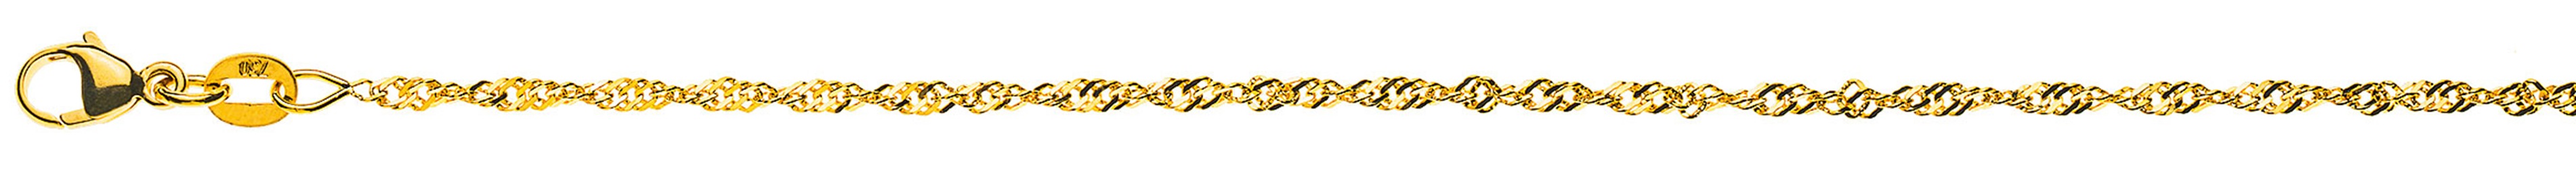 AURONOS Prestige Necklace Yellow Gold 18K Singapore Chain 38cm 1.9mm